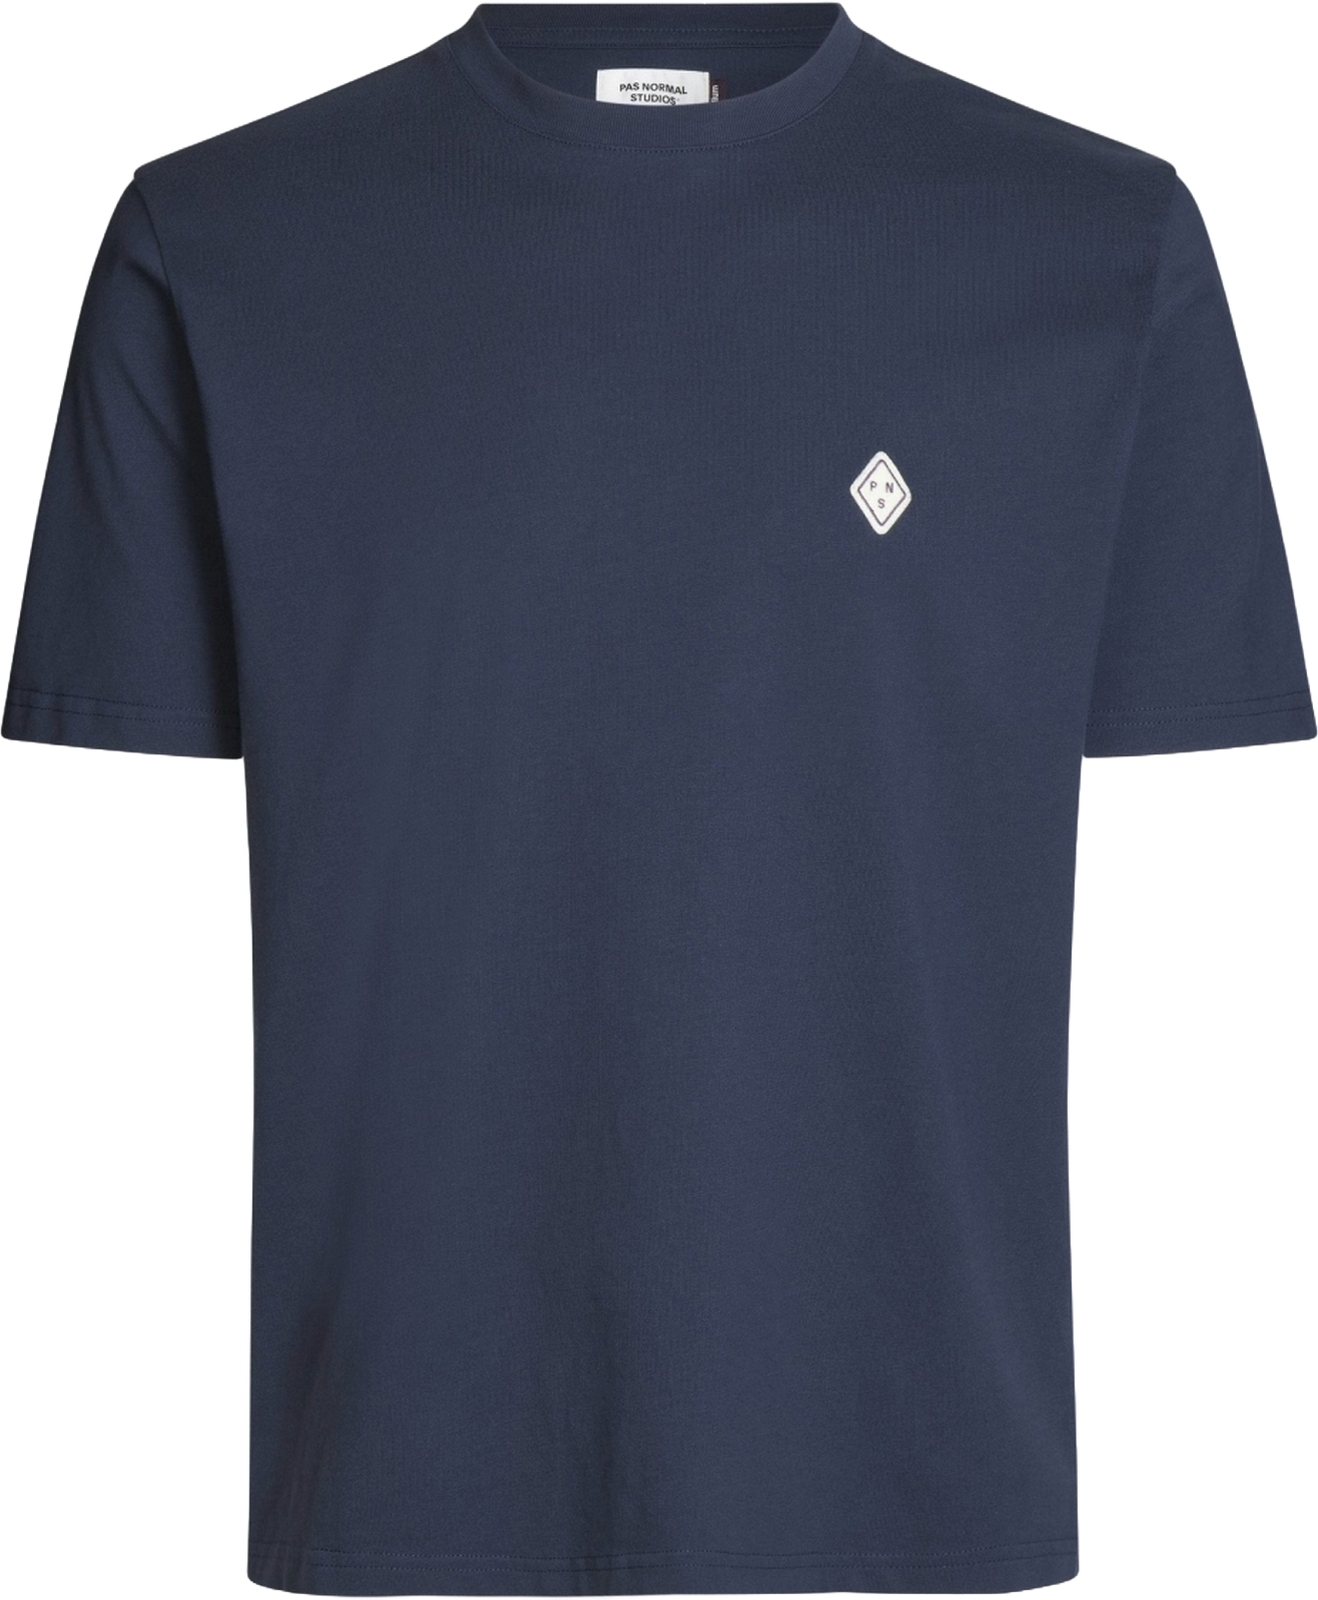 E-shop Pas Normal Studios Off-Race Patch T-Shirt - Navy L